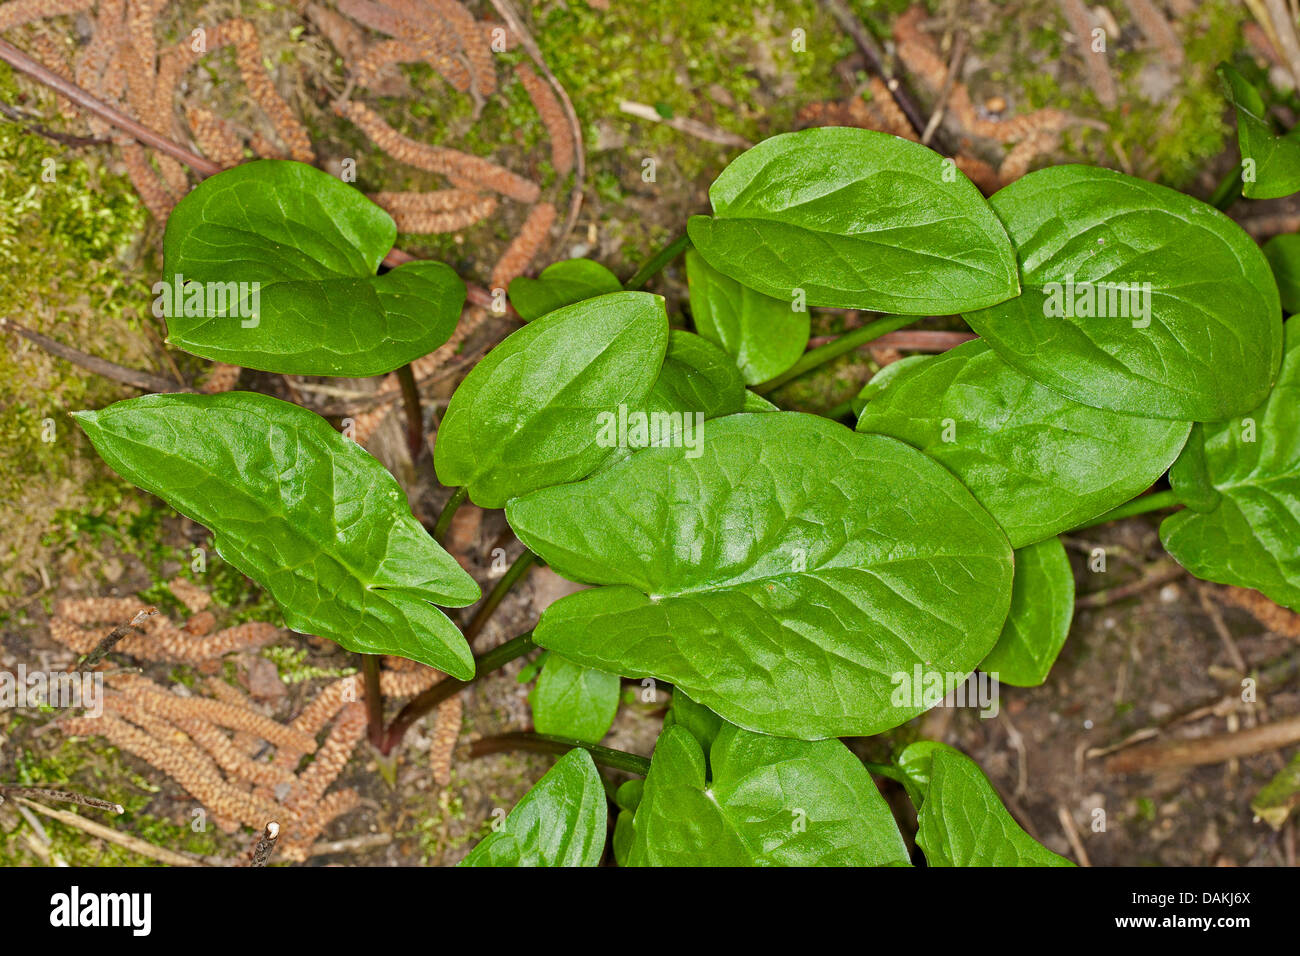 lords-and-ladies, portland arrowroot, cuckoopint (Arum maculatum), leaves, Germany Stock Photo